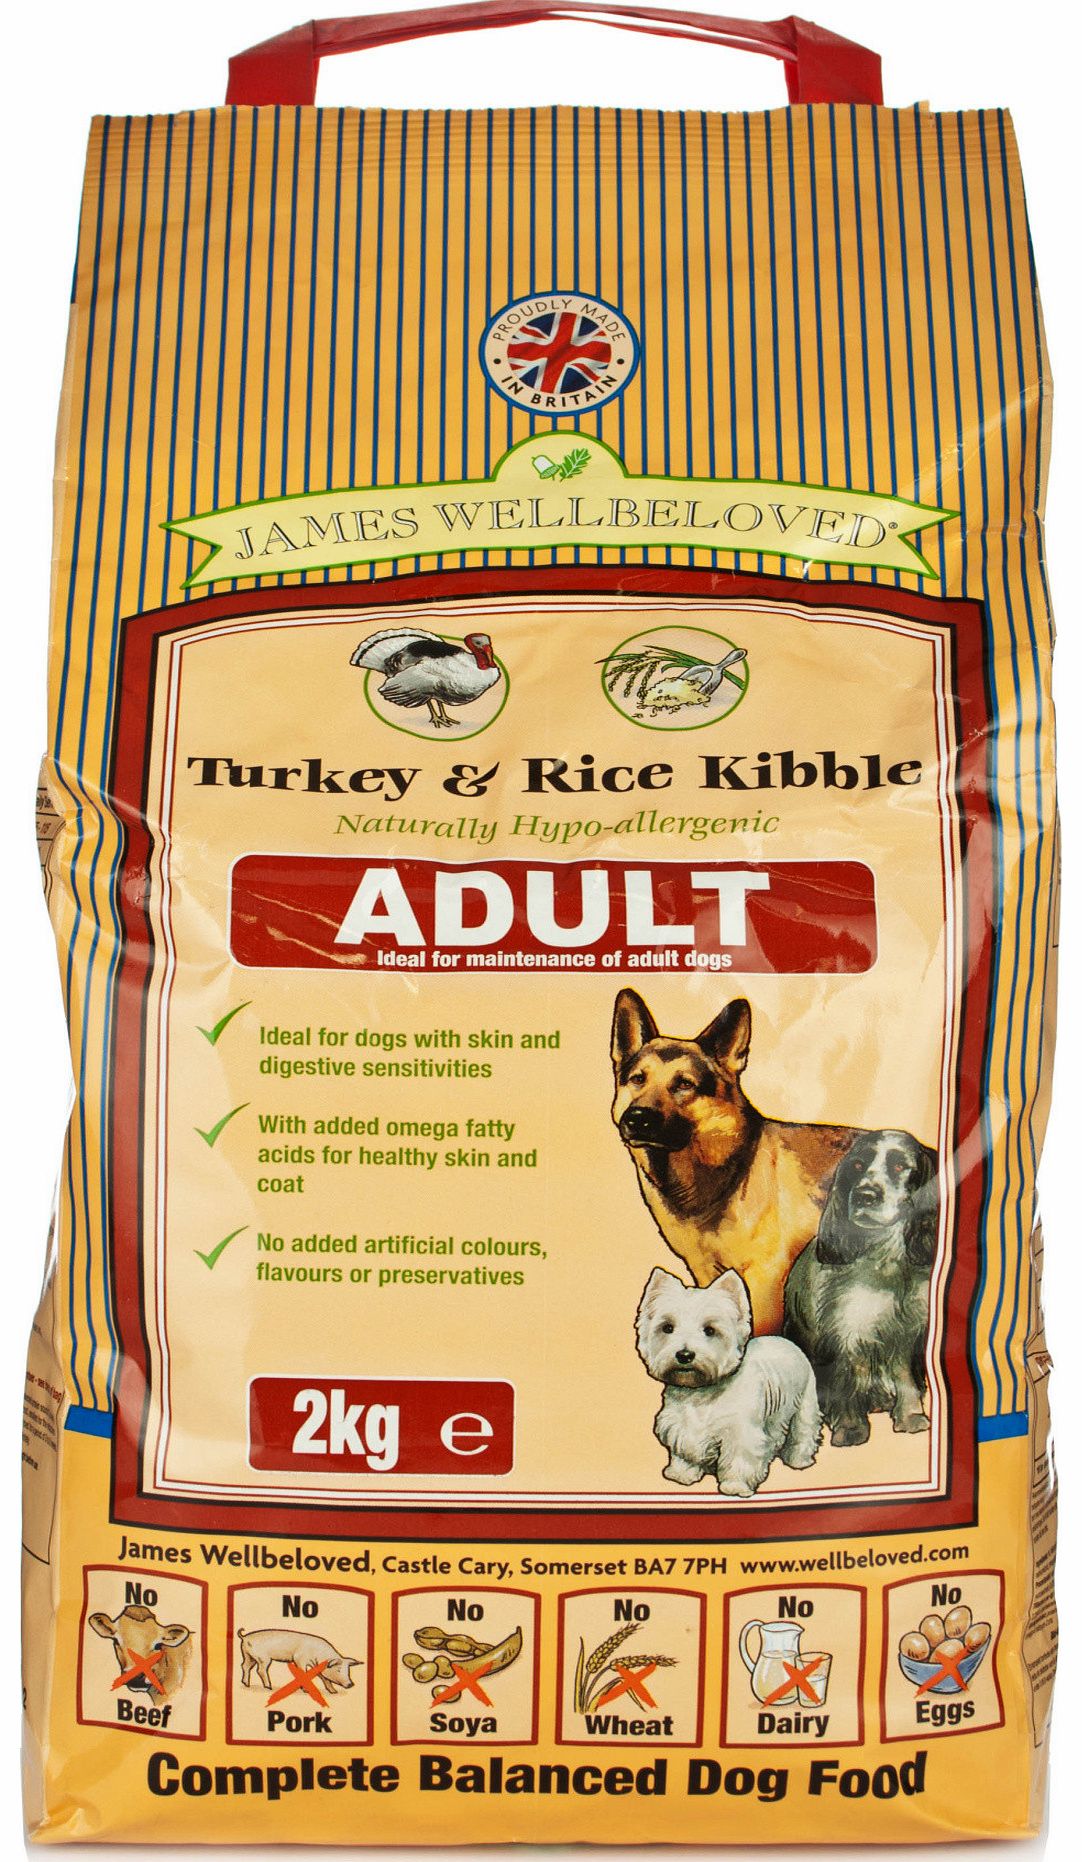 Adult Turkey & Rice